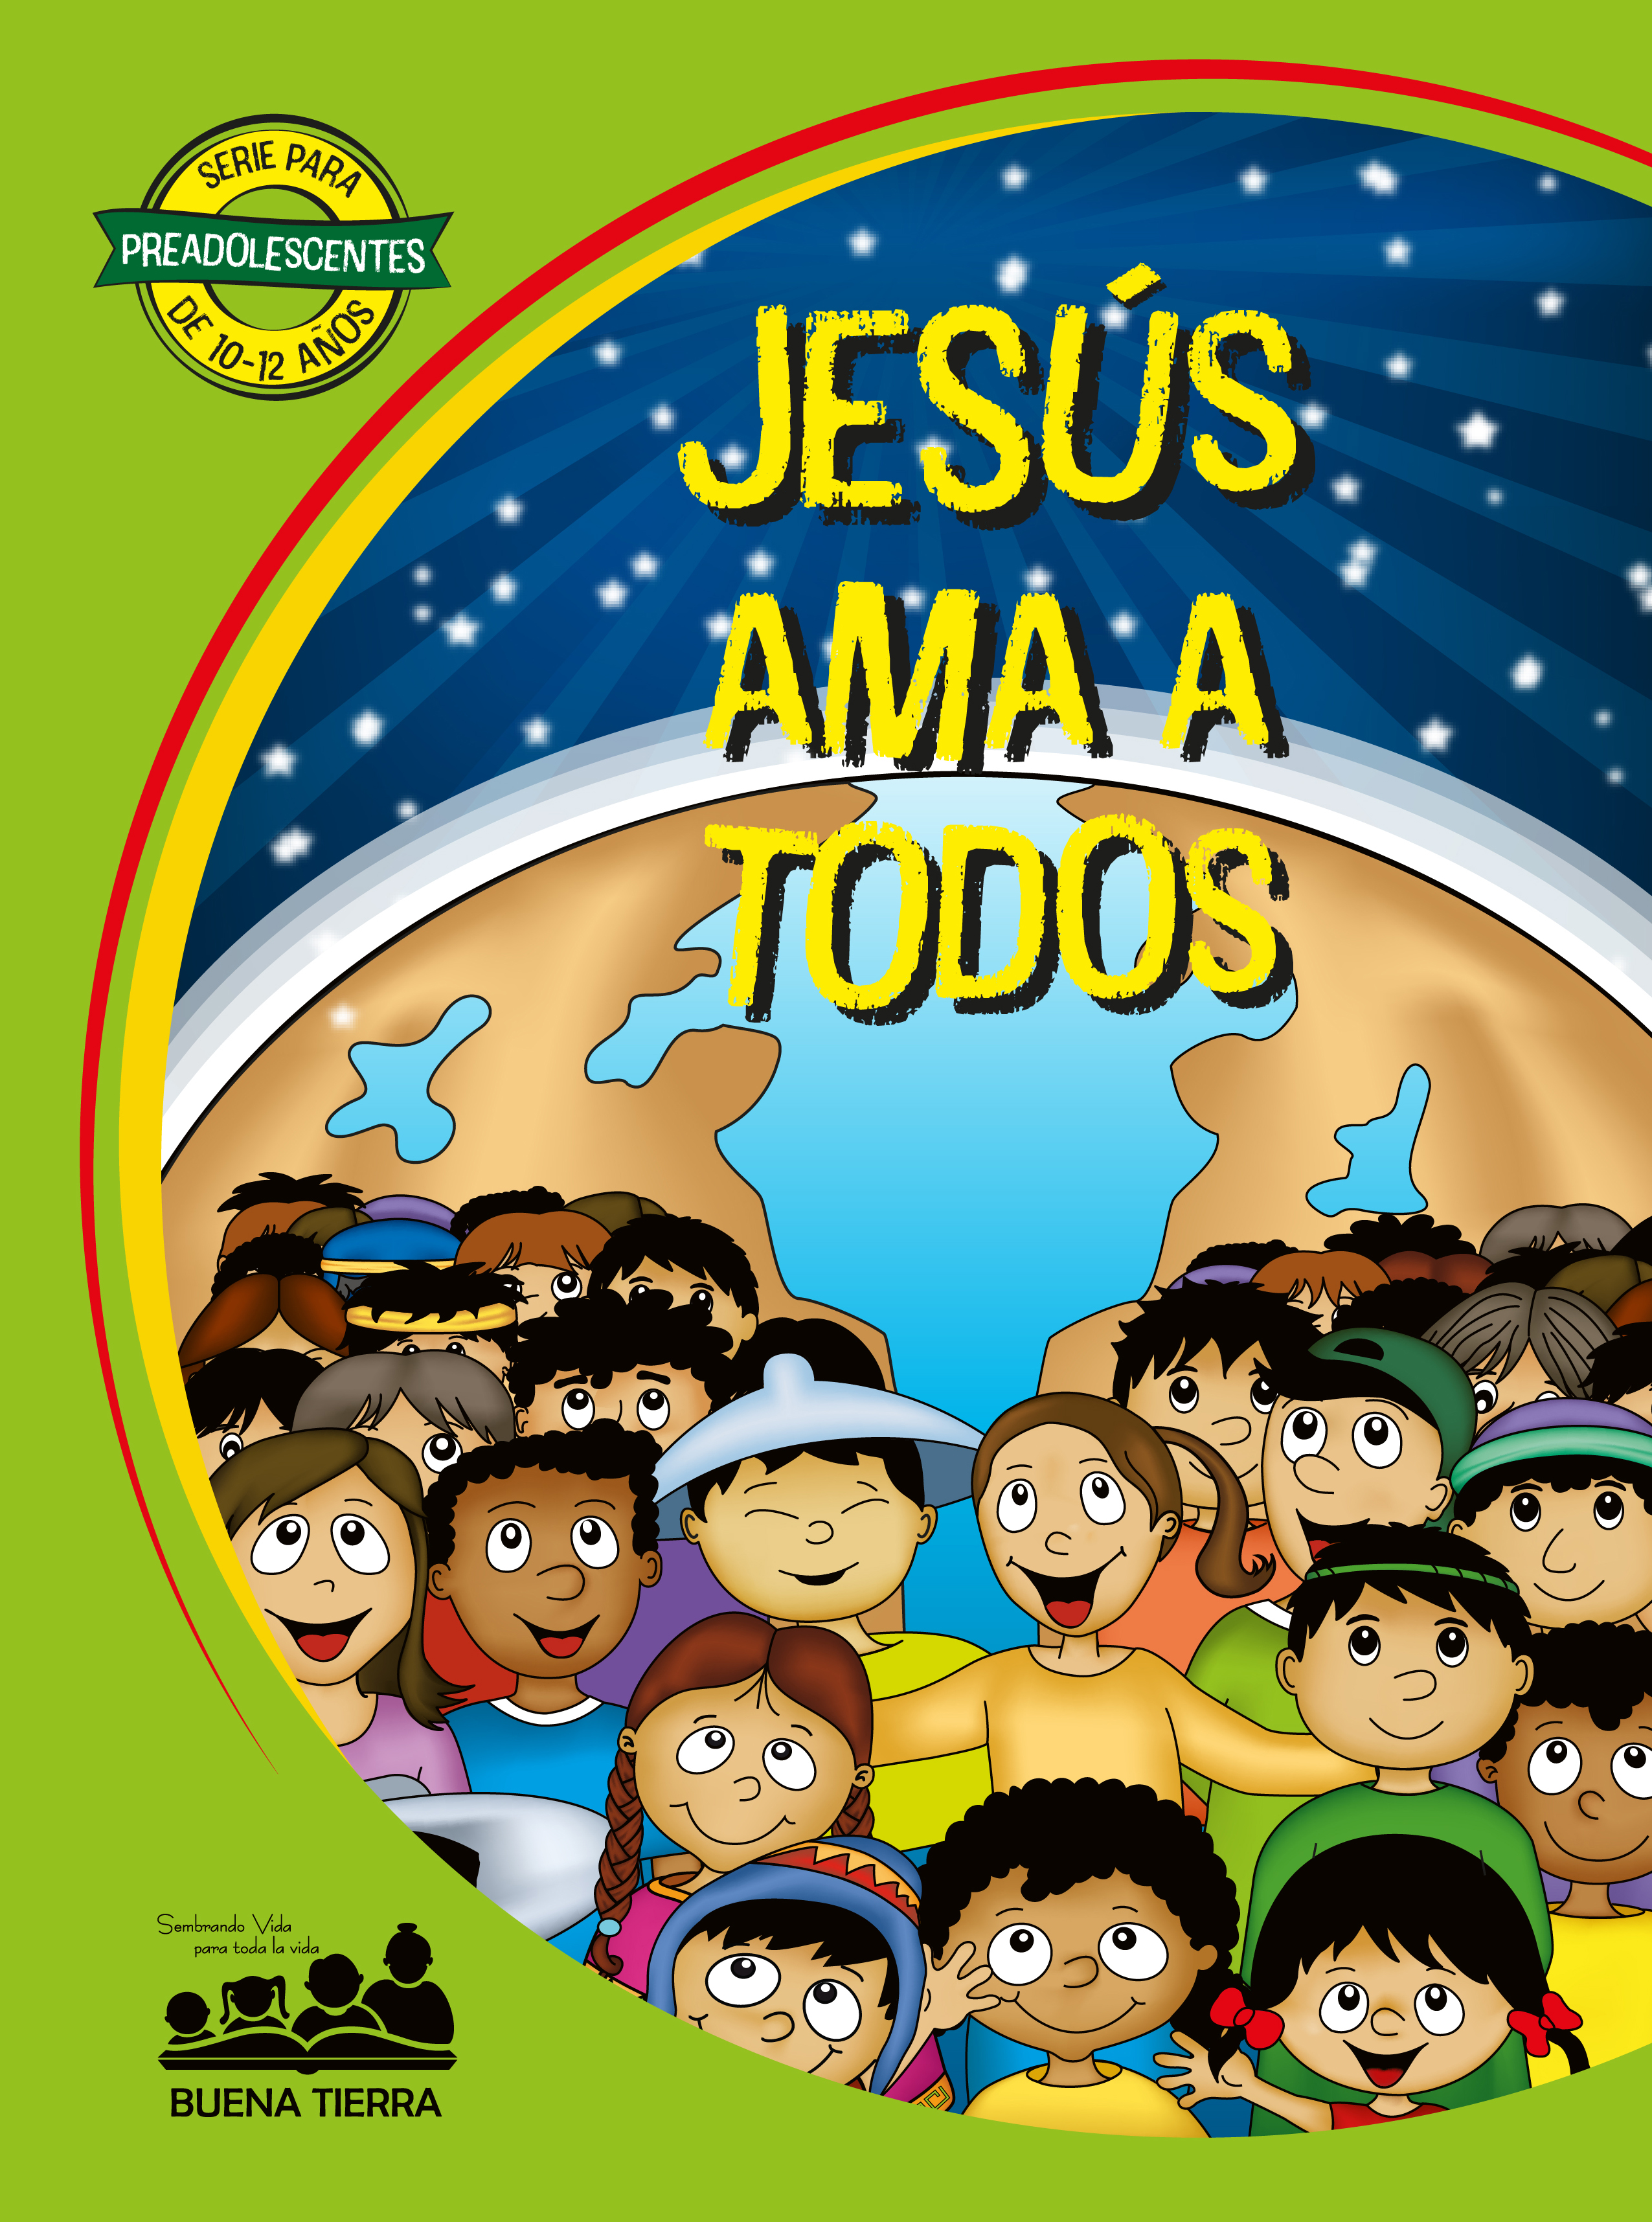 JESÚS AMA A TODOS